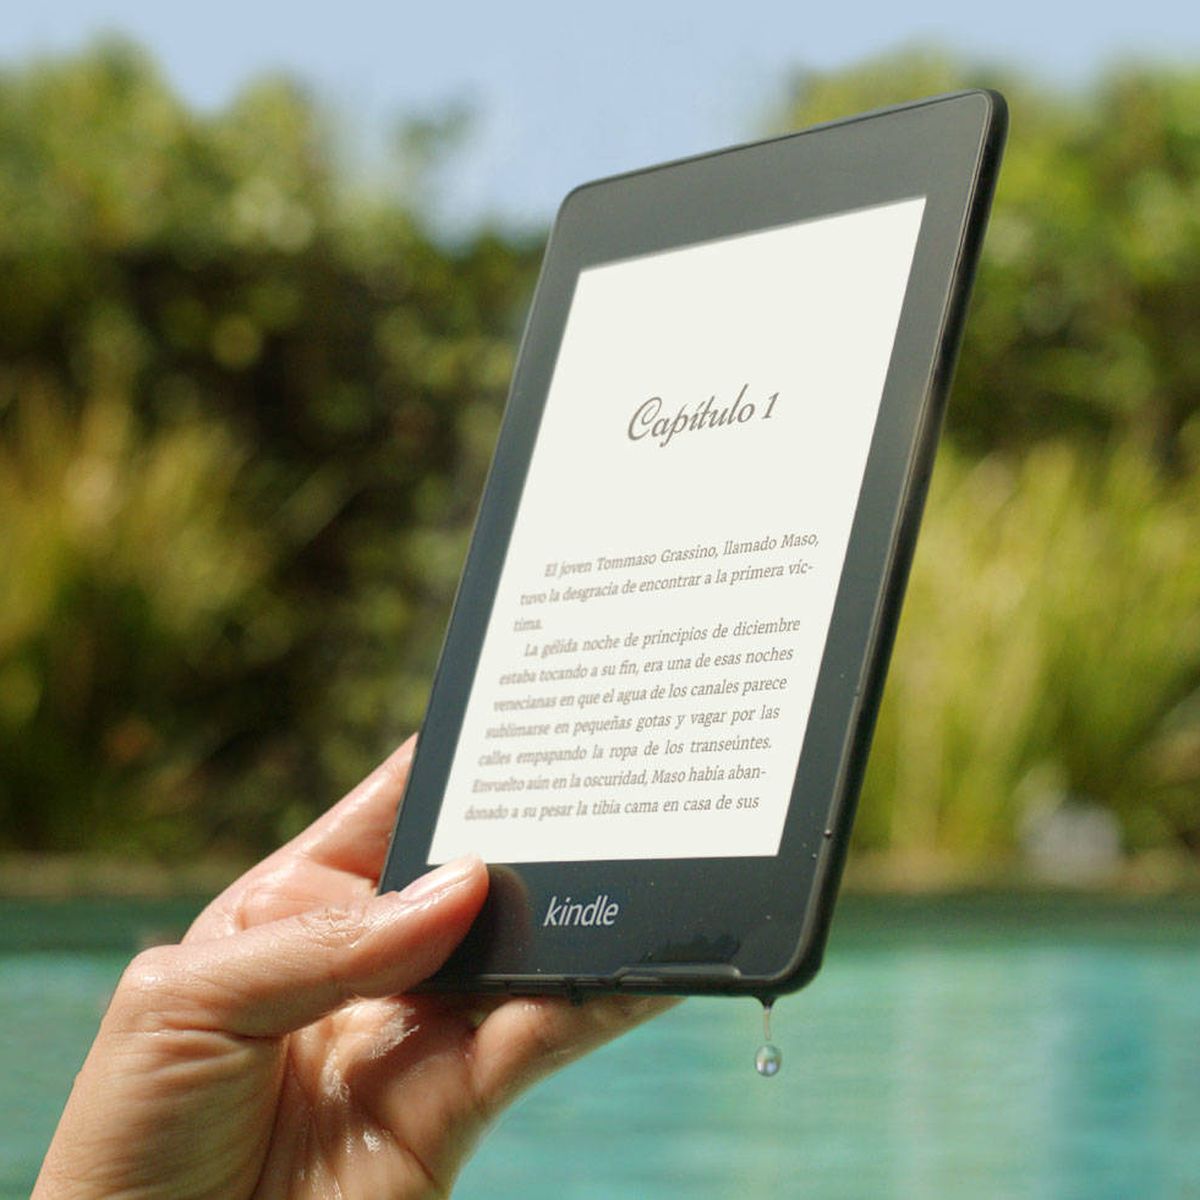 Kindle Paperwhite tiene pantalla de alta resolución resistente al agua y  está en oferta 25€ más barato